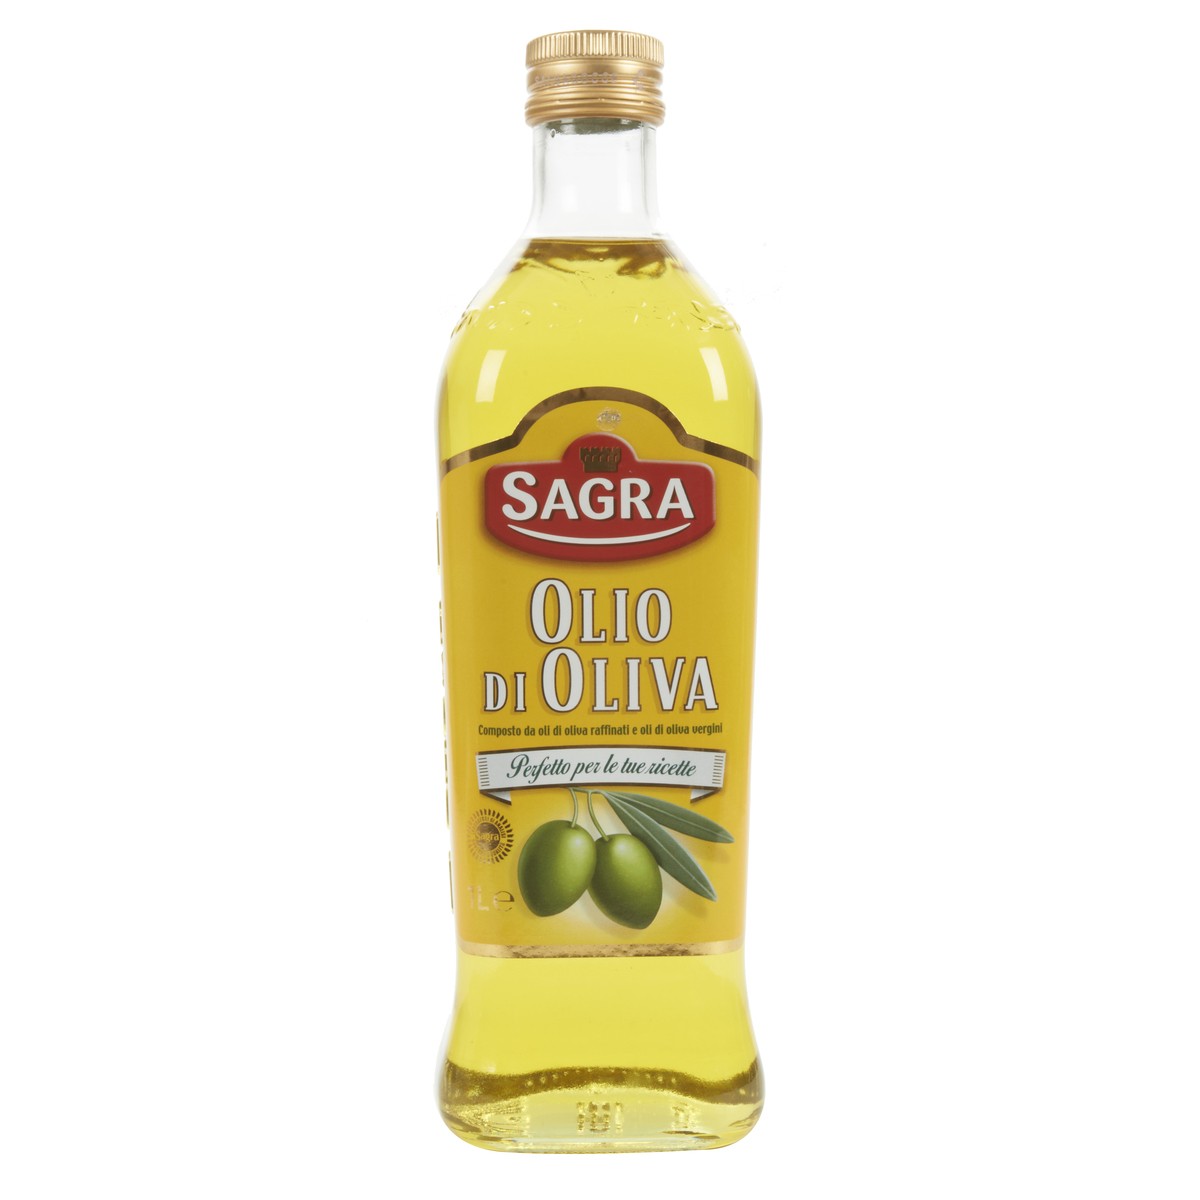 Sagra Olio di oliva